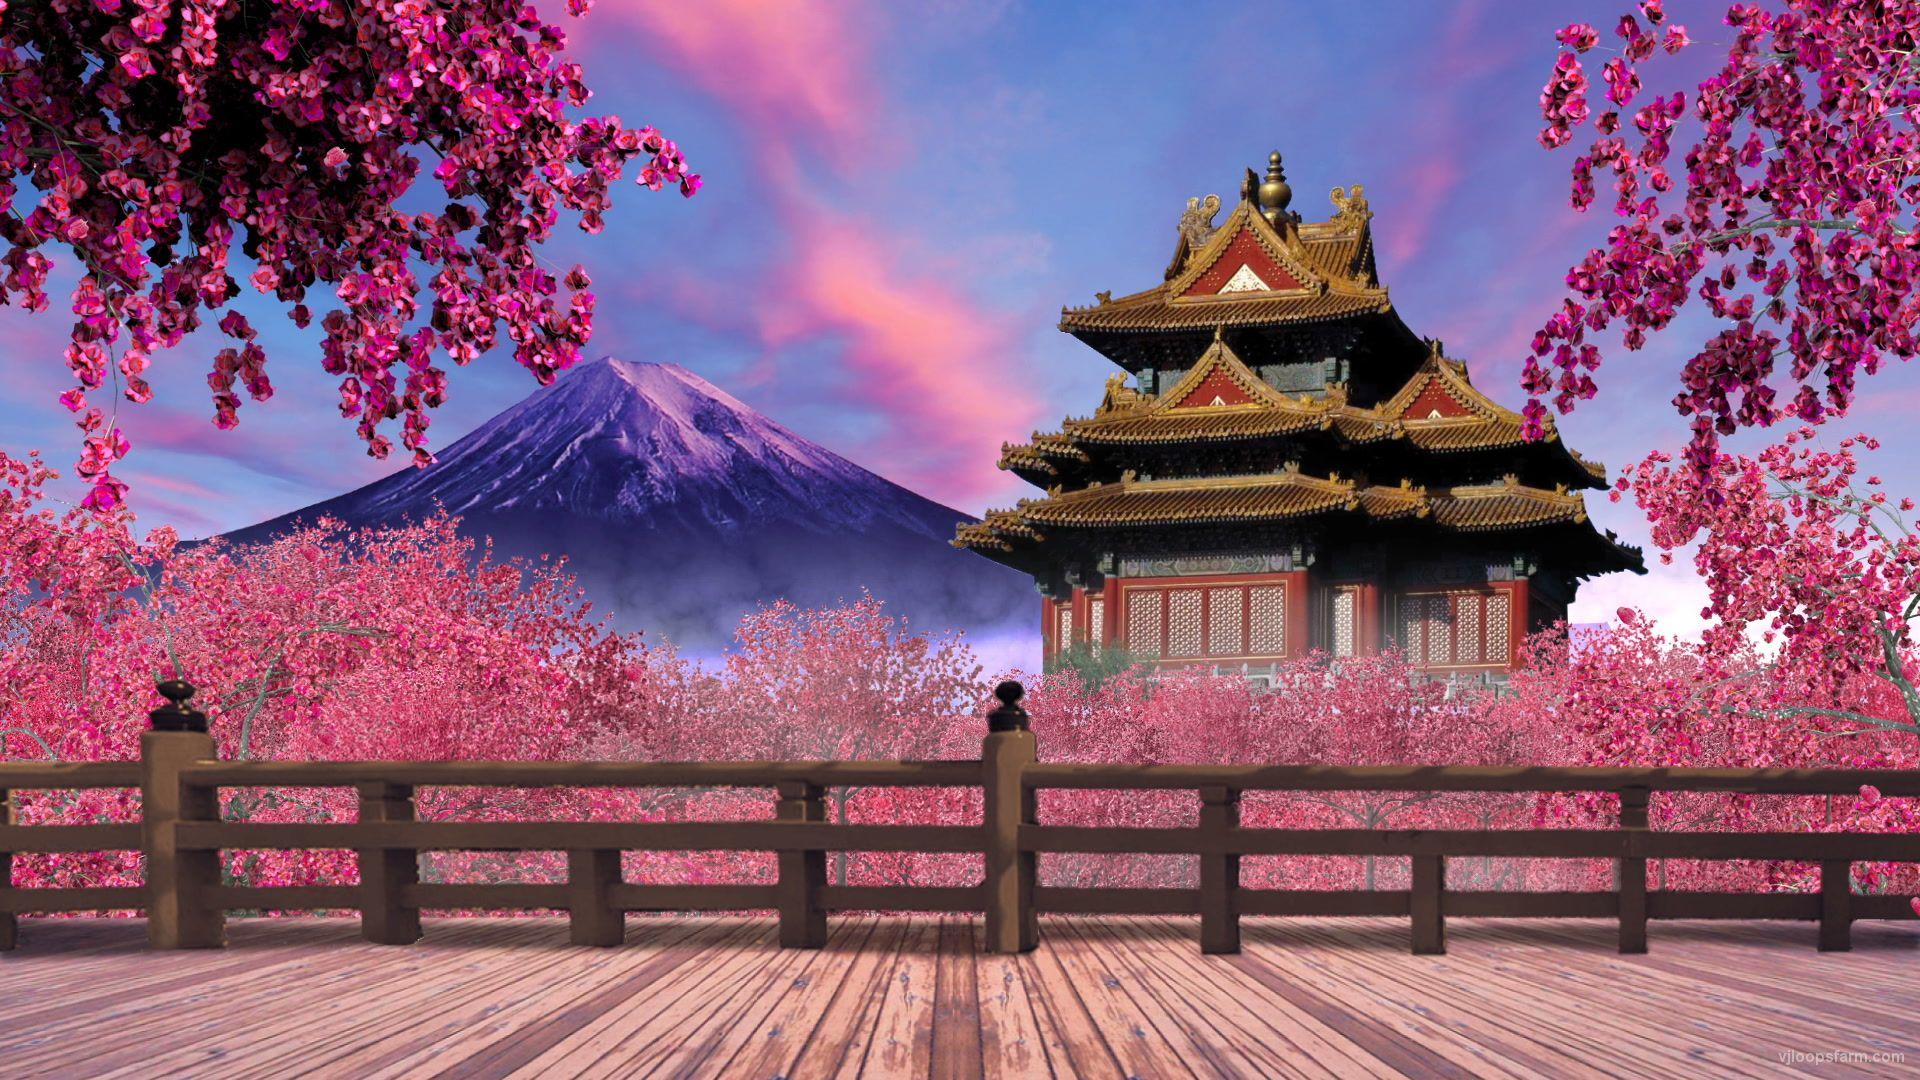 Japan pink garden Loop. Download Full HD vj loop